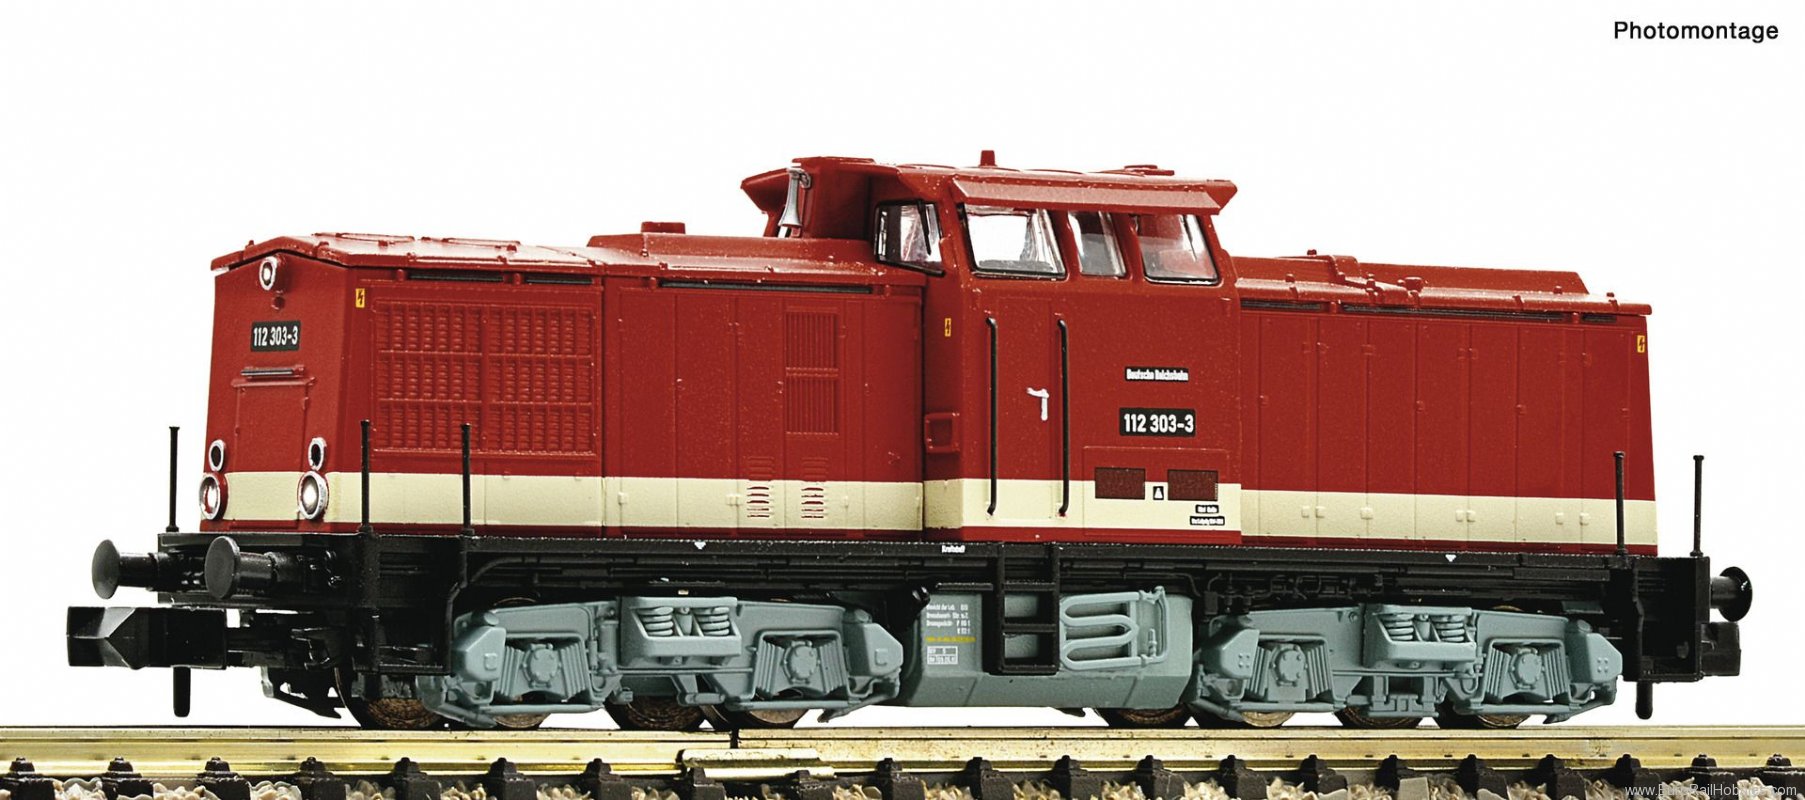 Fleischmann 721016 DR 112 303-3 Diesel locomotive